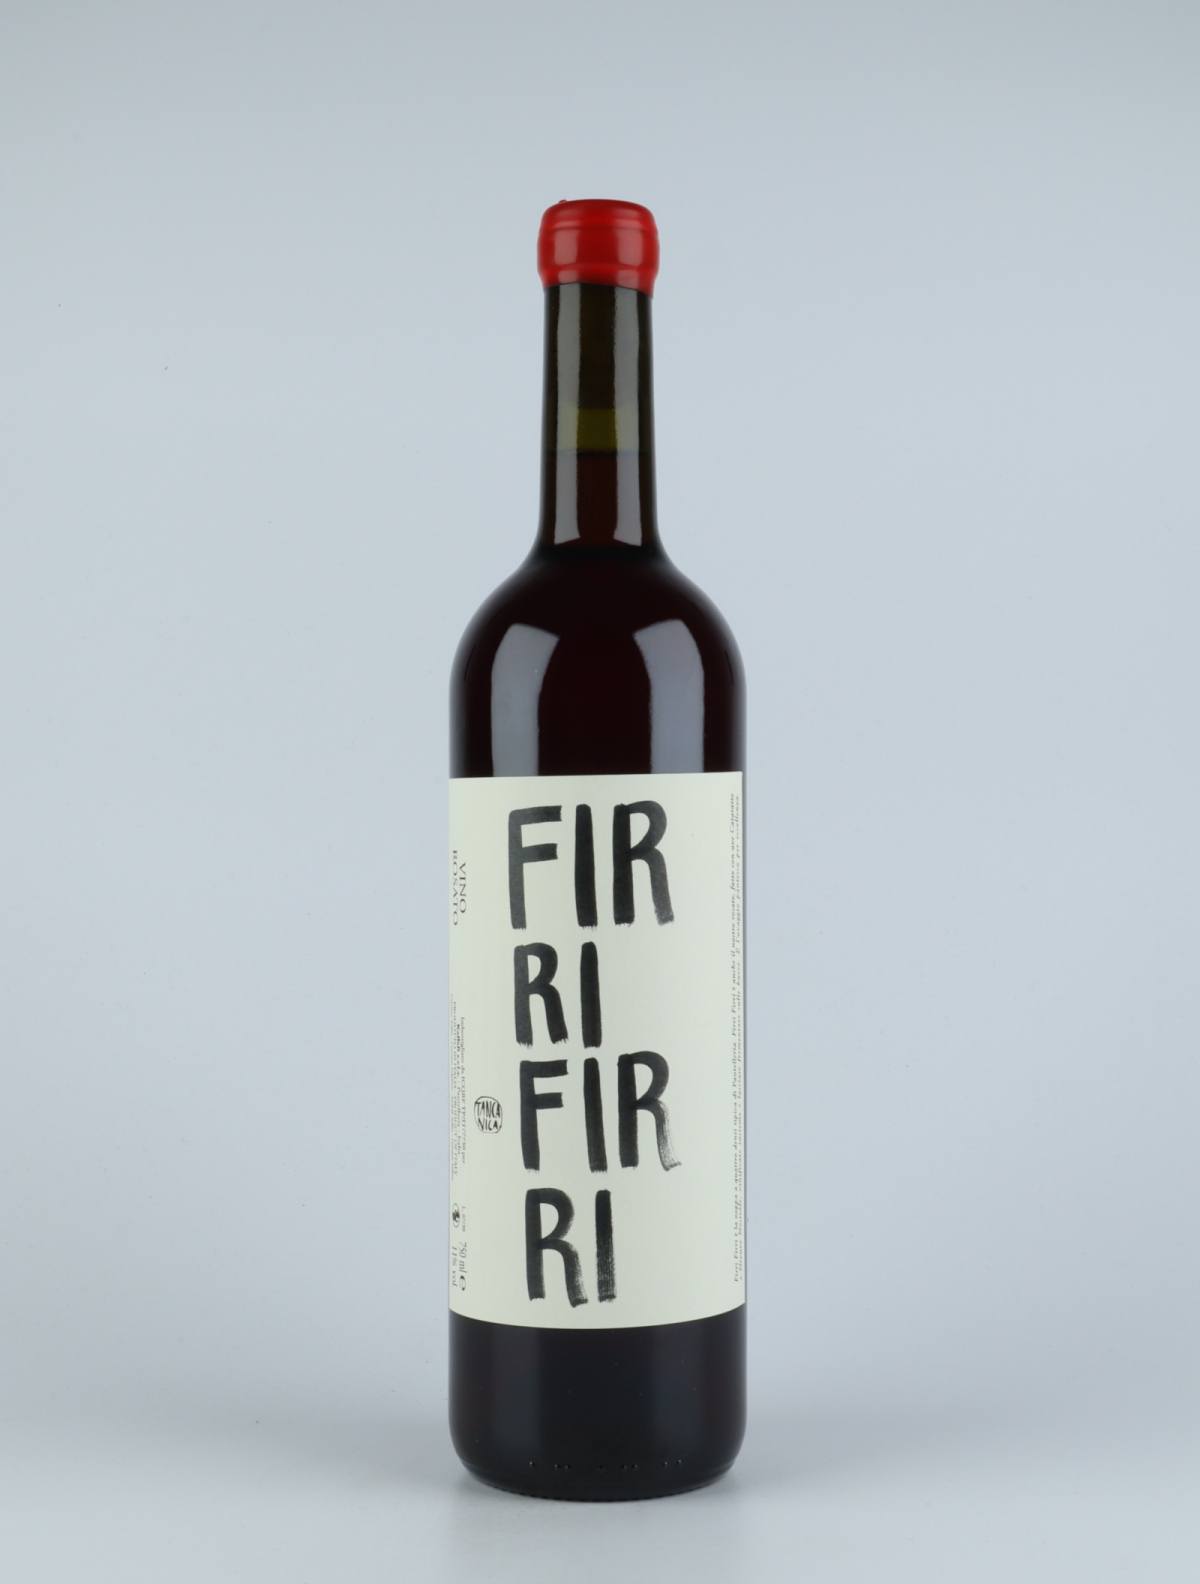 A bottle 2019 Firri Firri Rosé from Tanca Nica, Sicily in Italy